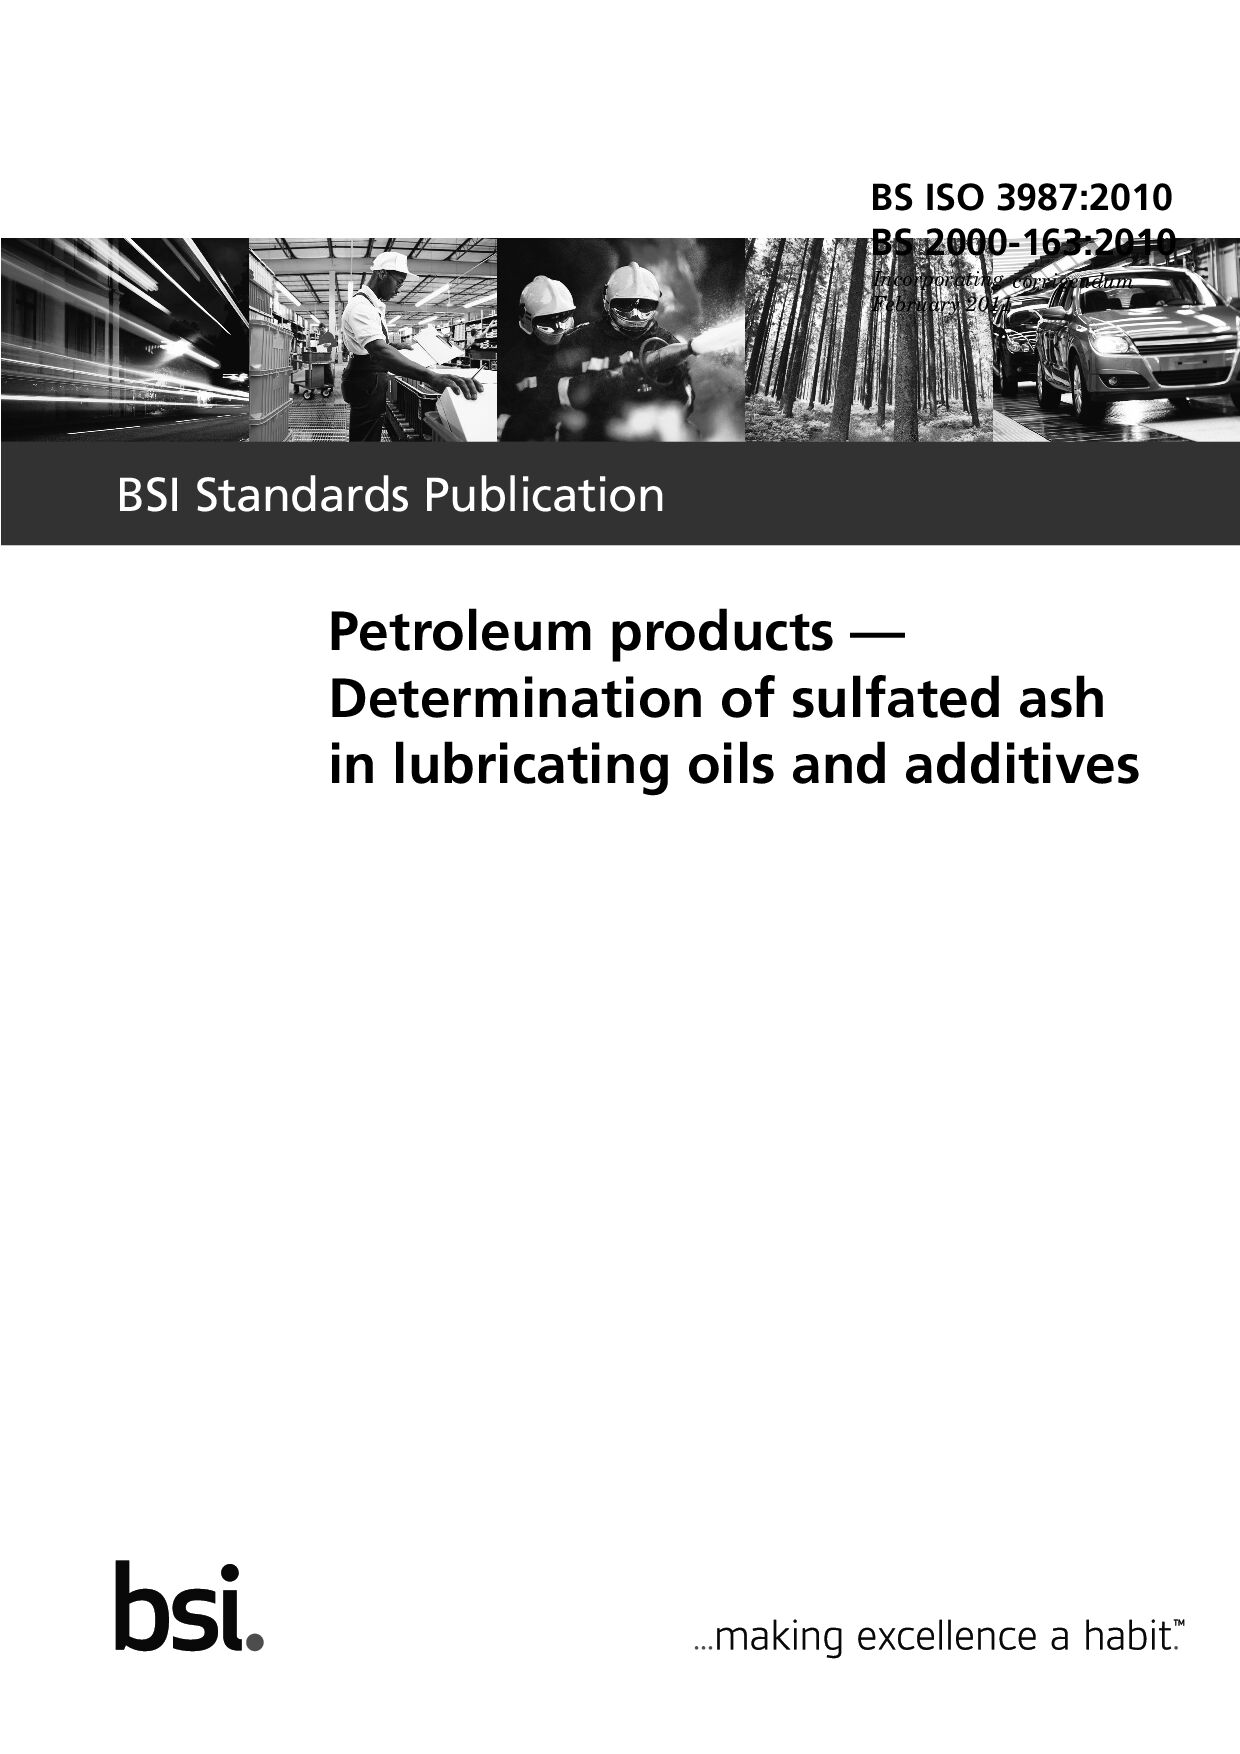 BS ISO 3987:2010(2011)*BS 2000-163:2010封面图